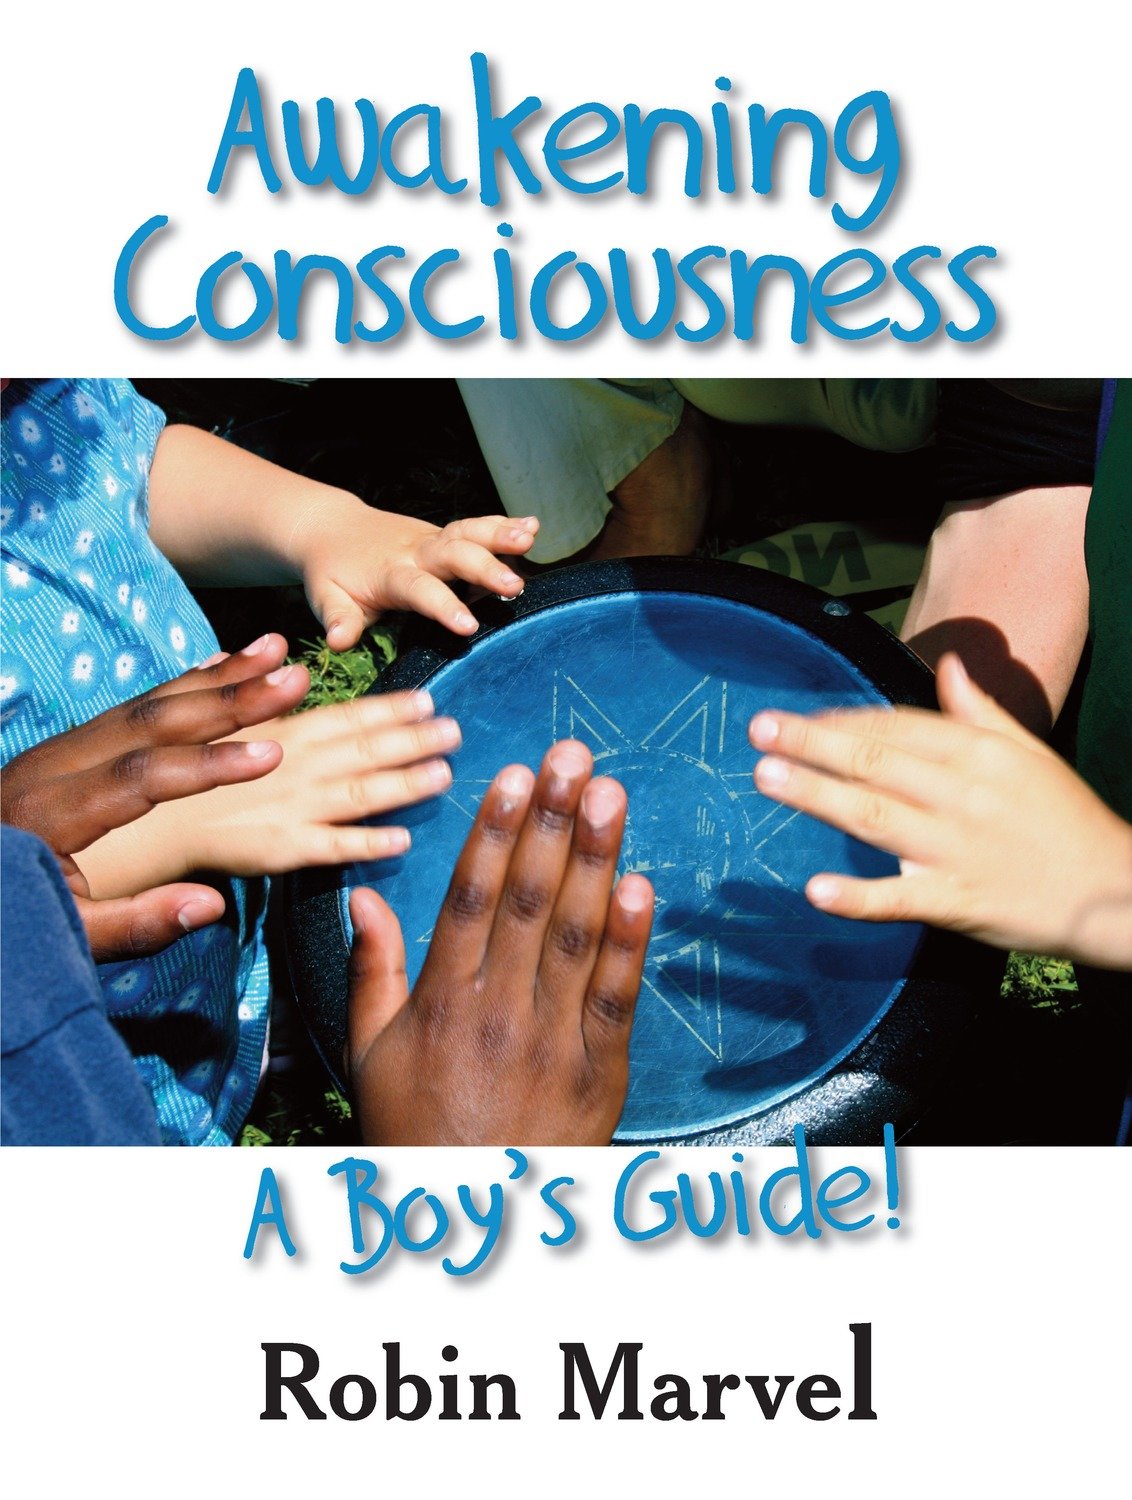 Awakening Consciousness: A Boy's Guide